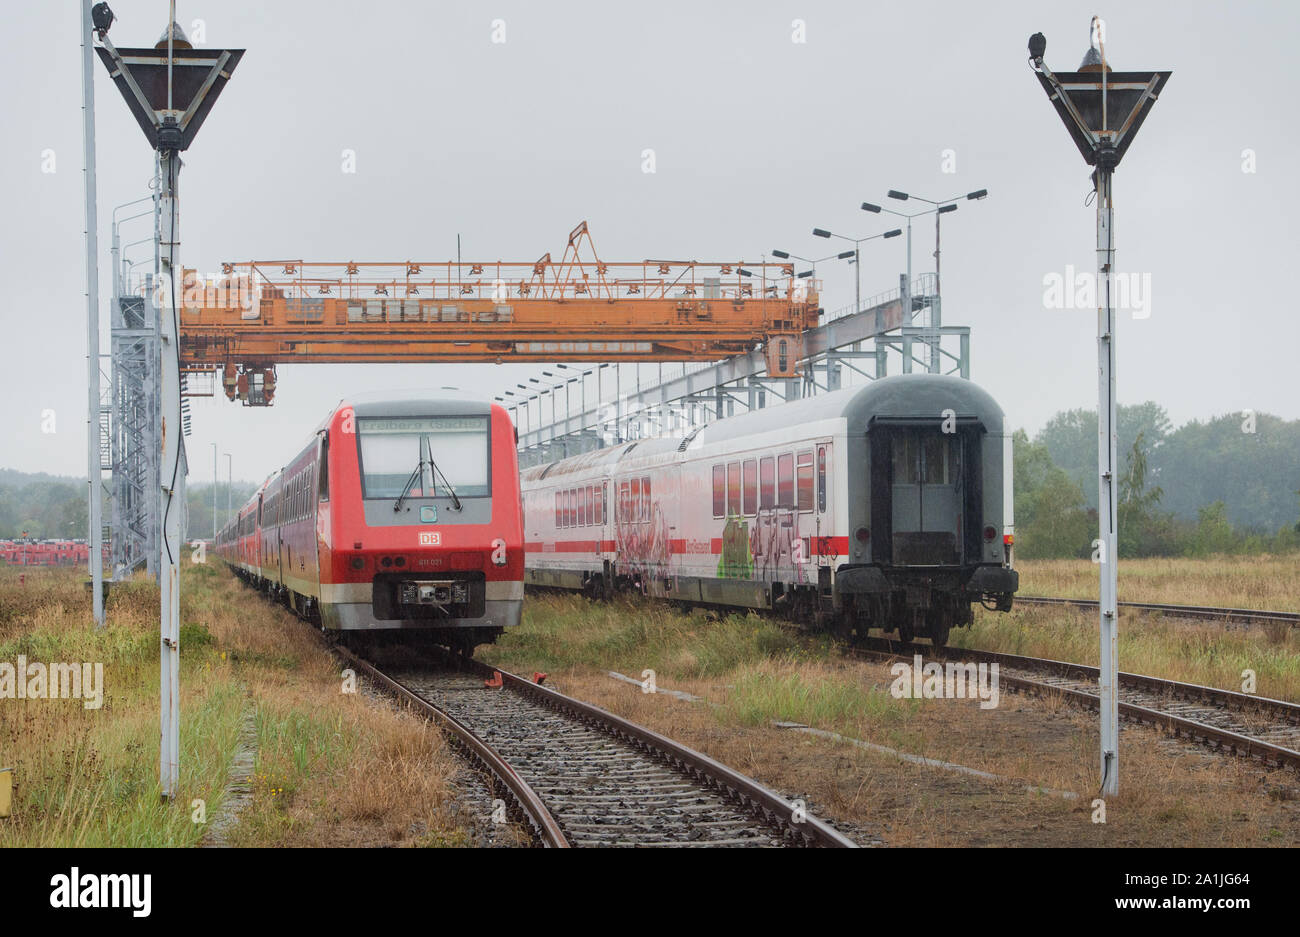 DLR prüft neues Licht an Bahnübergängen - AUTO BILD